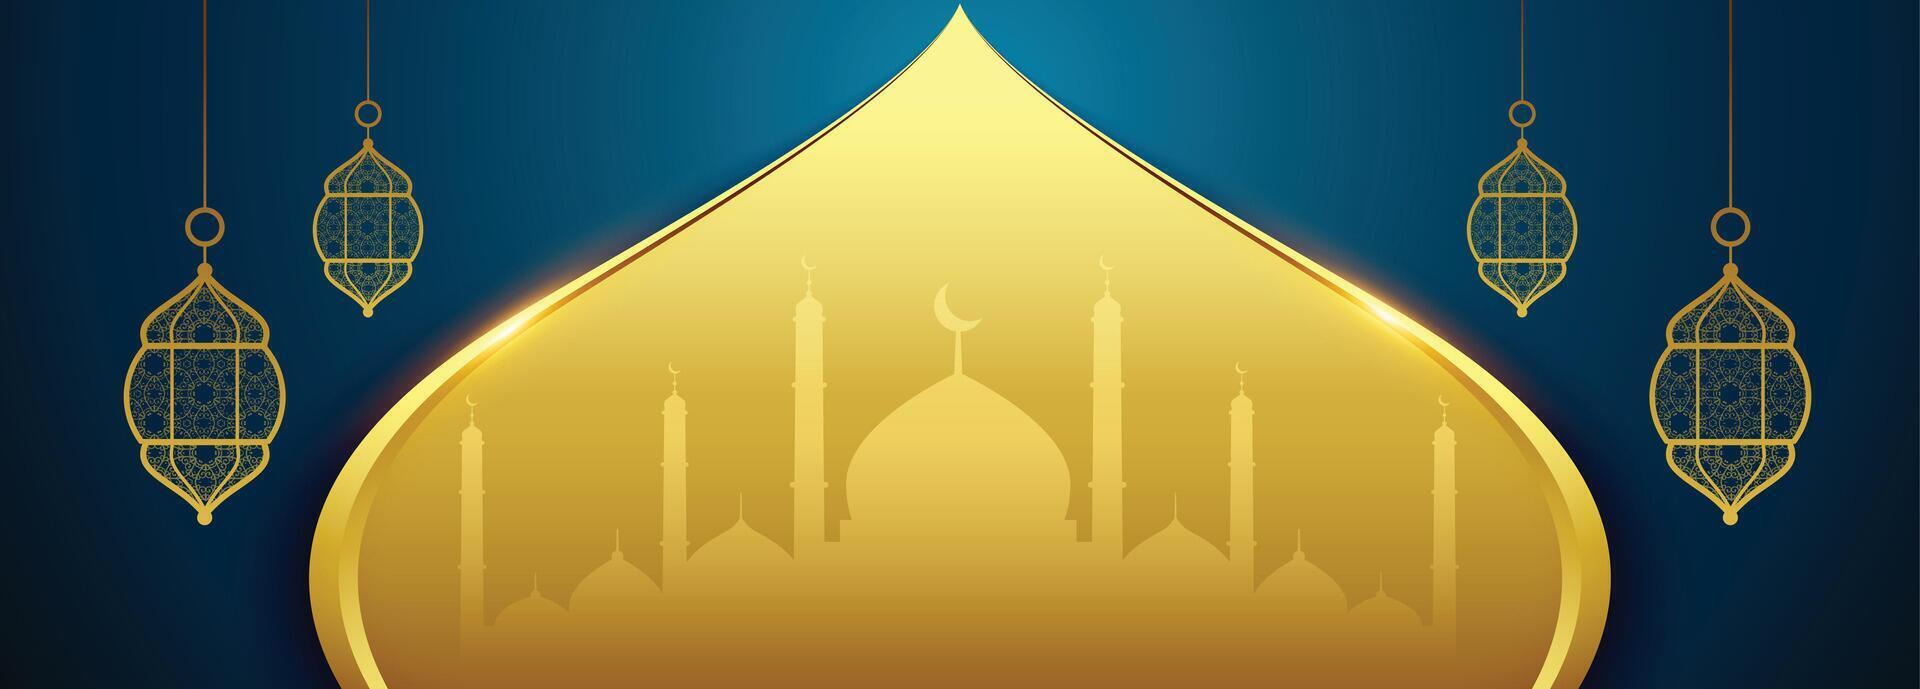 islamico eid Festival bandiera nel d'oro colore vettore